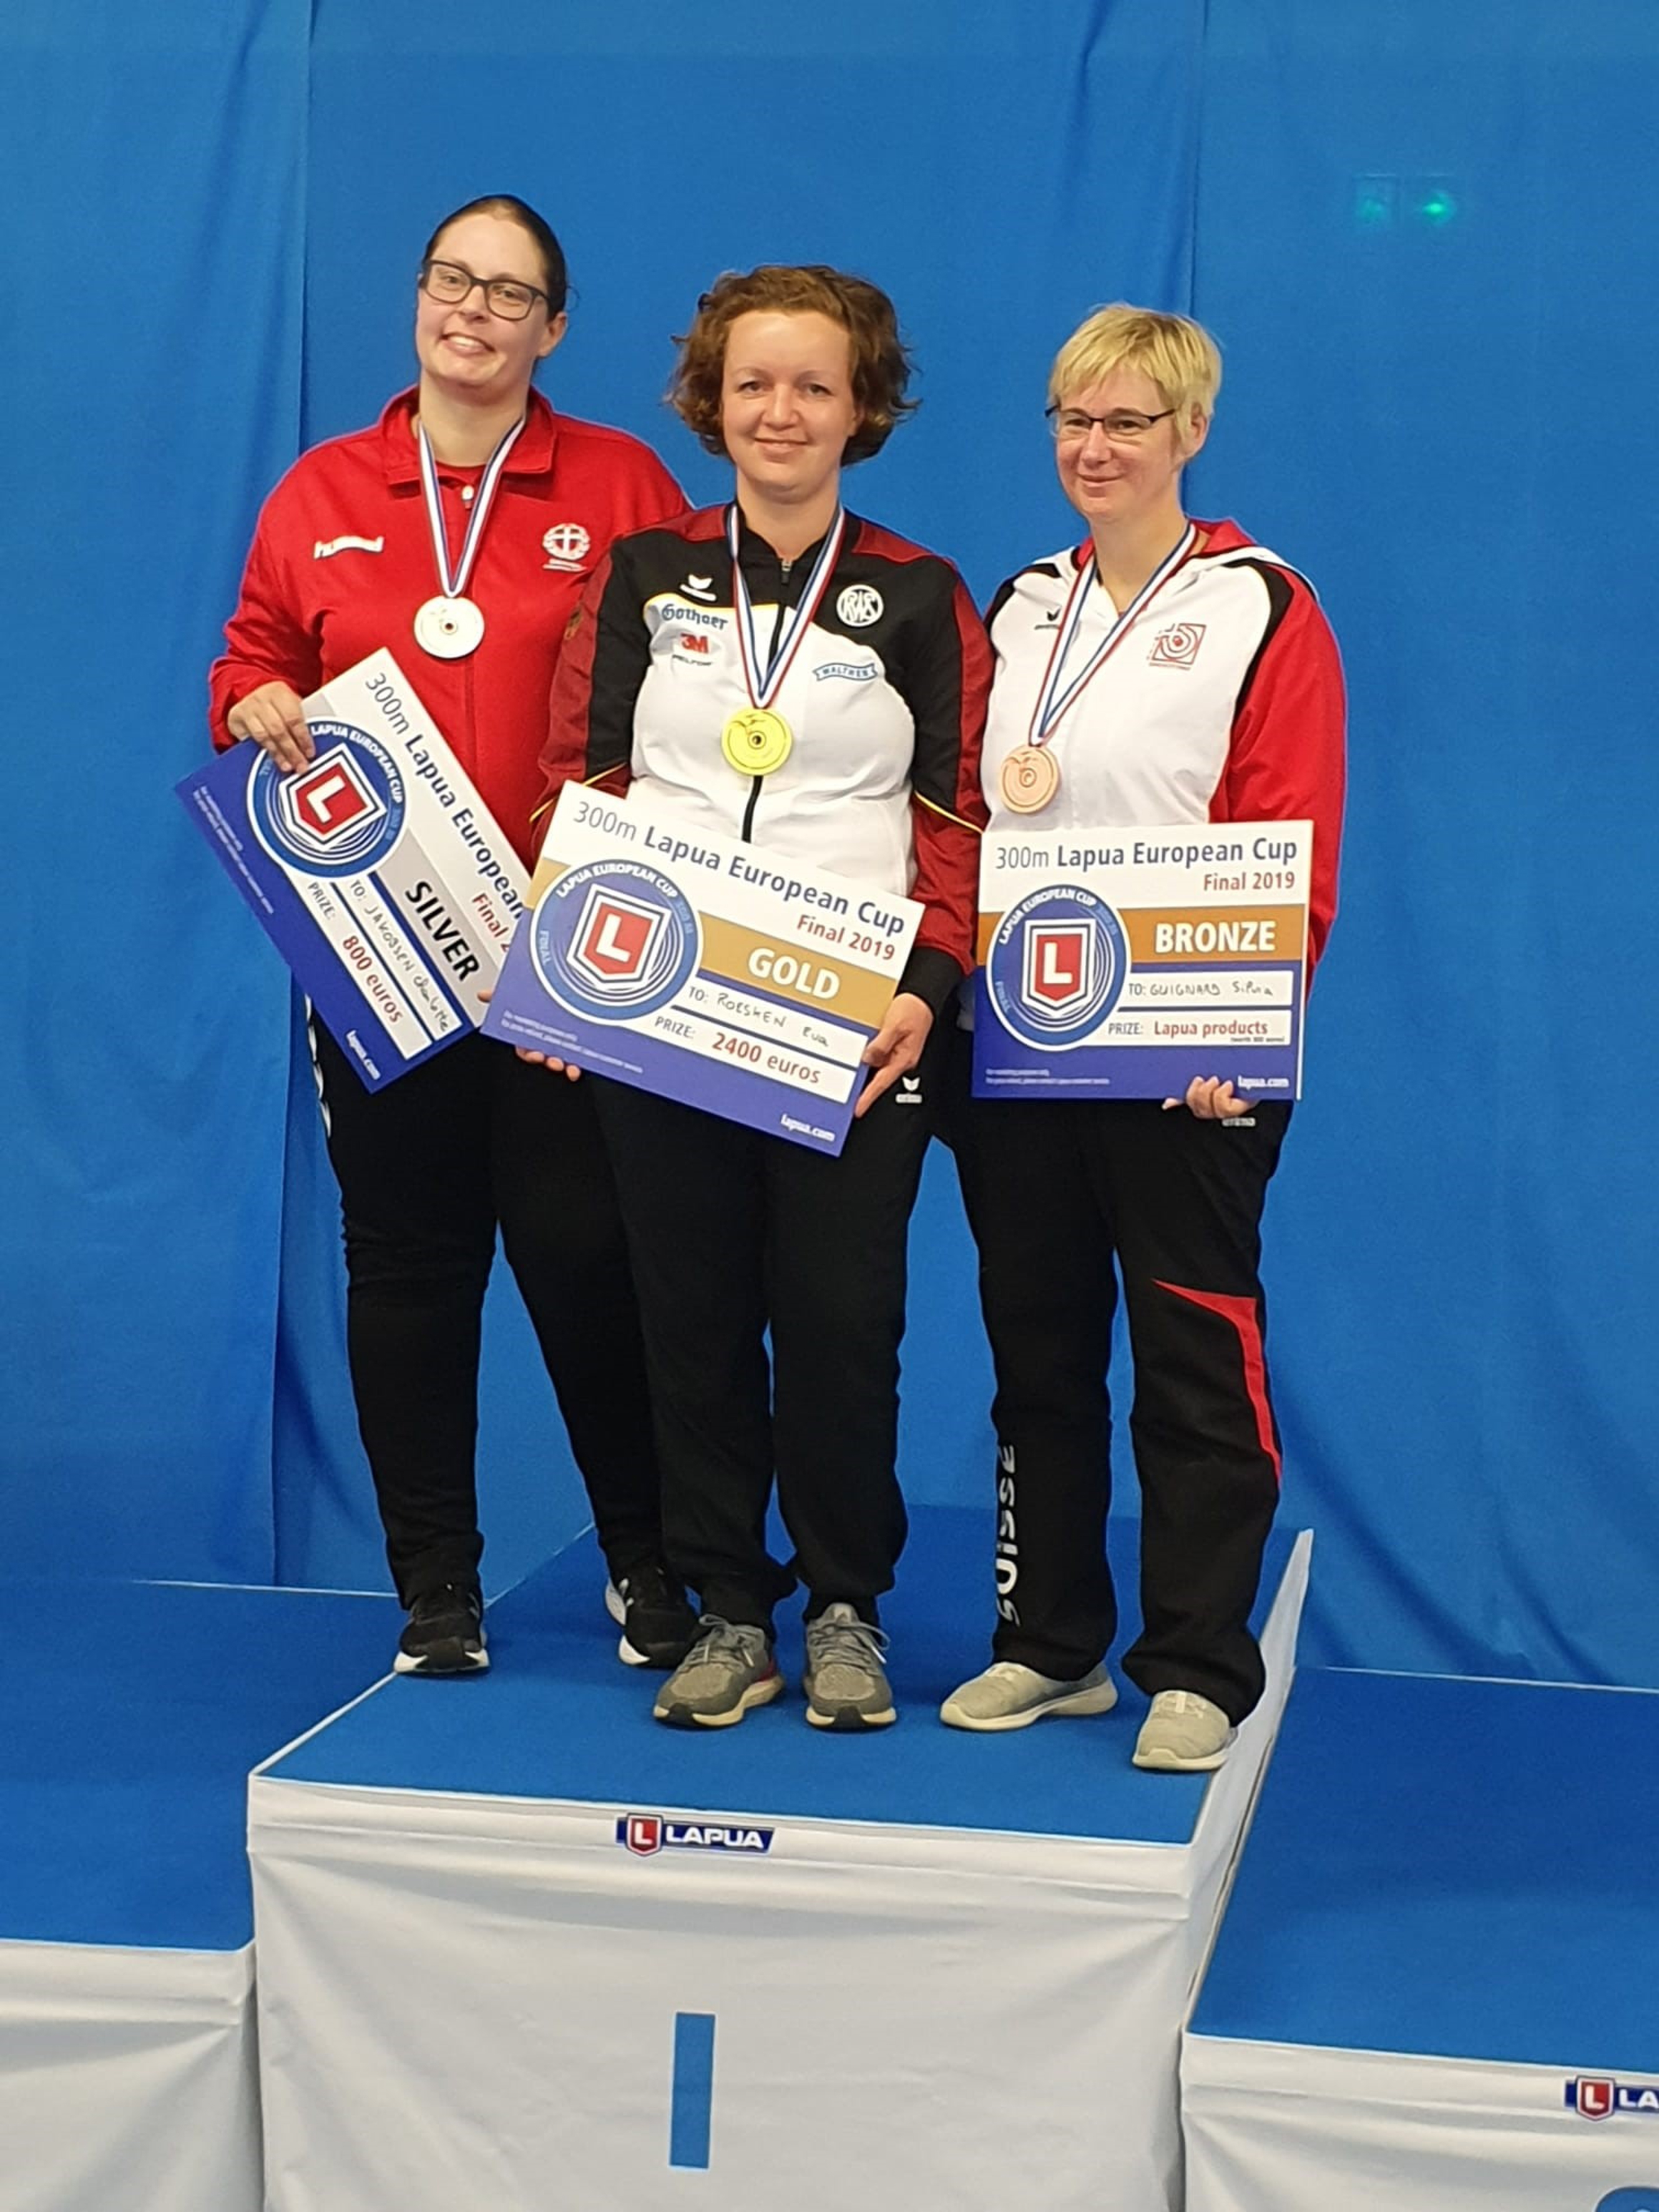 Nach Gold nun Bronze: Silvia Guignard (rechts) belegte im Liegendmatch Gewehr 300m hinter Siegerin Eva Roesken (Mitte) und Charlotte Jakobsen den dritten Rang.